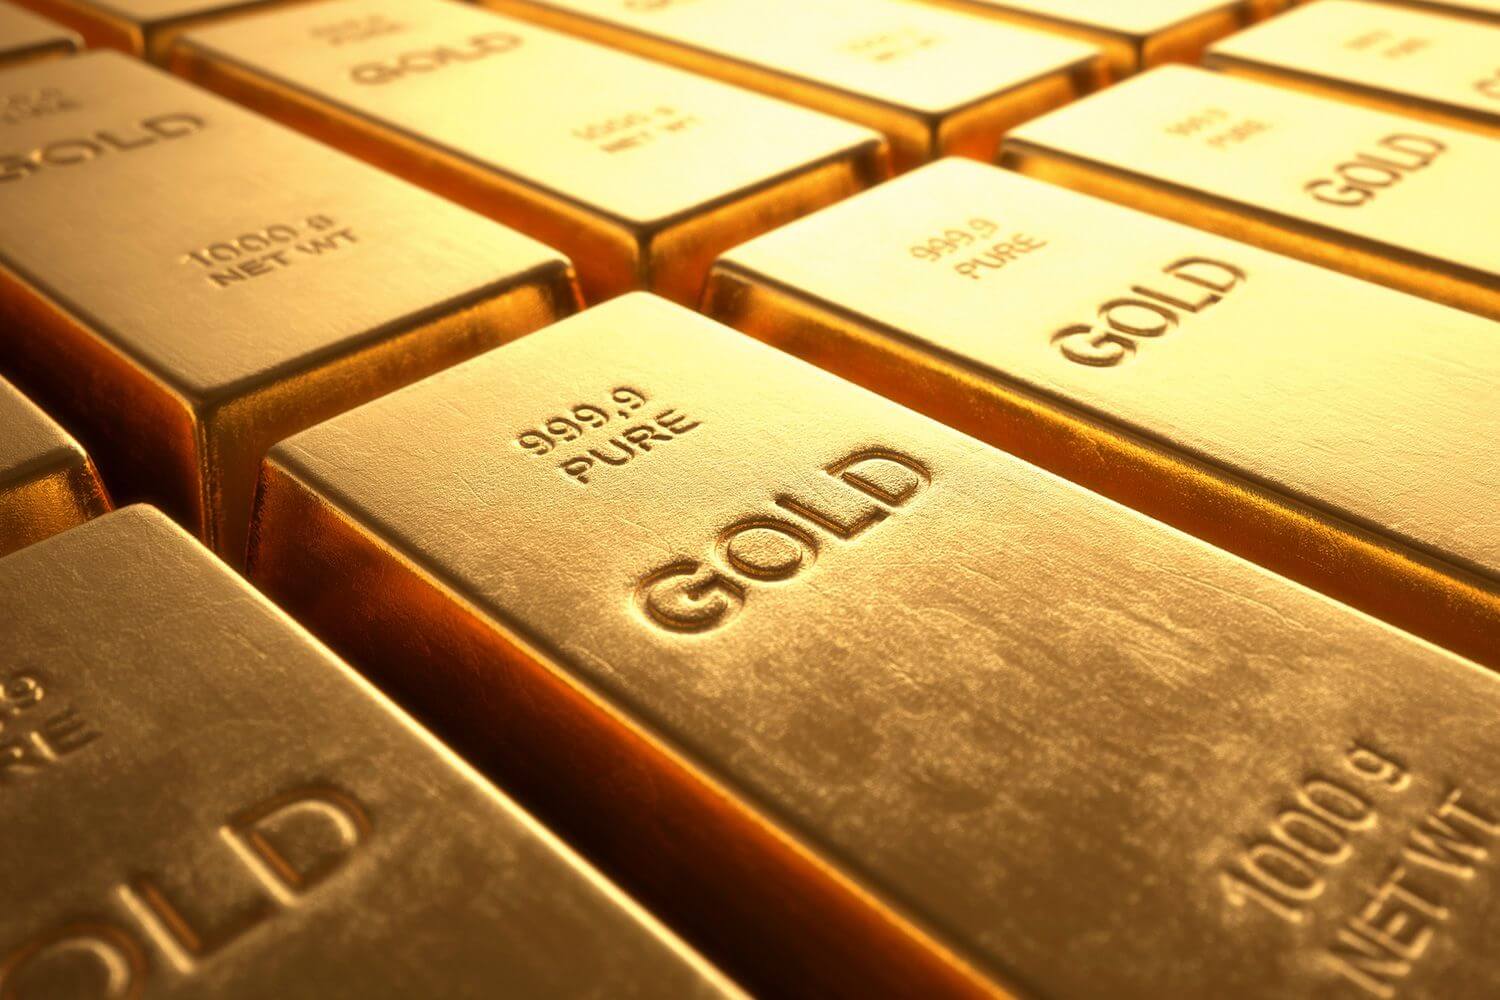 سعر الذهب اليوم الجمعة 19/7/2019 يصل لأعلى مستوياته خلال الأسبوع